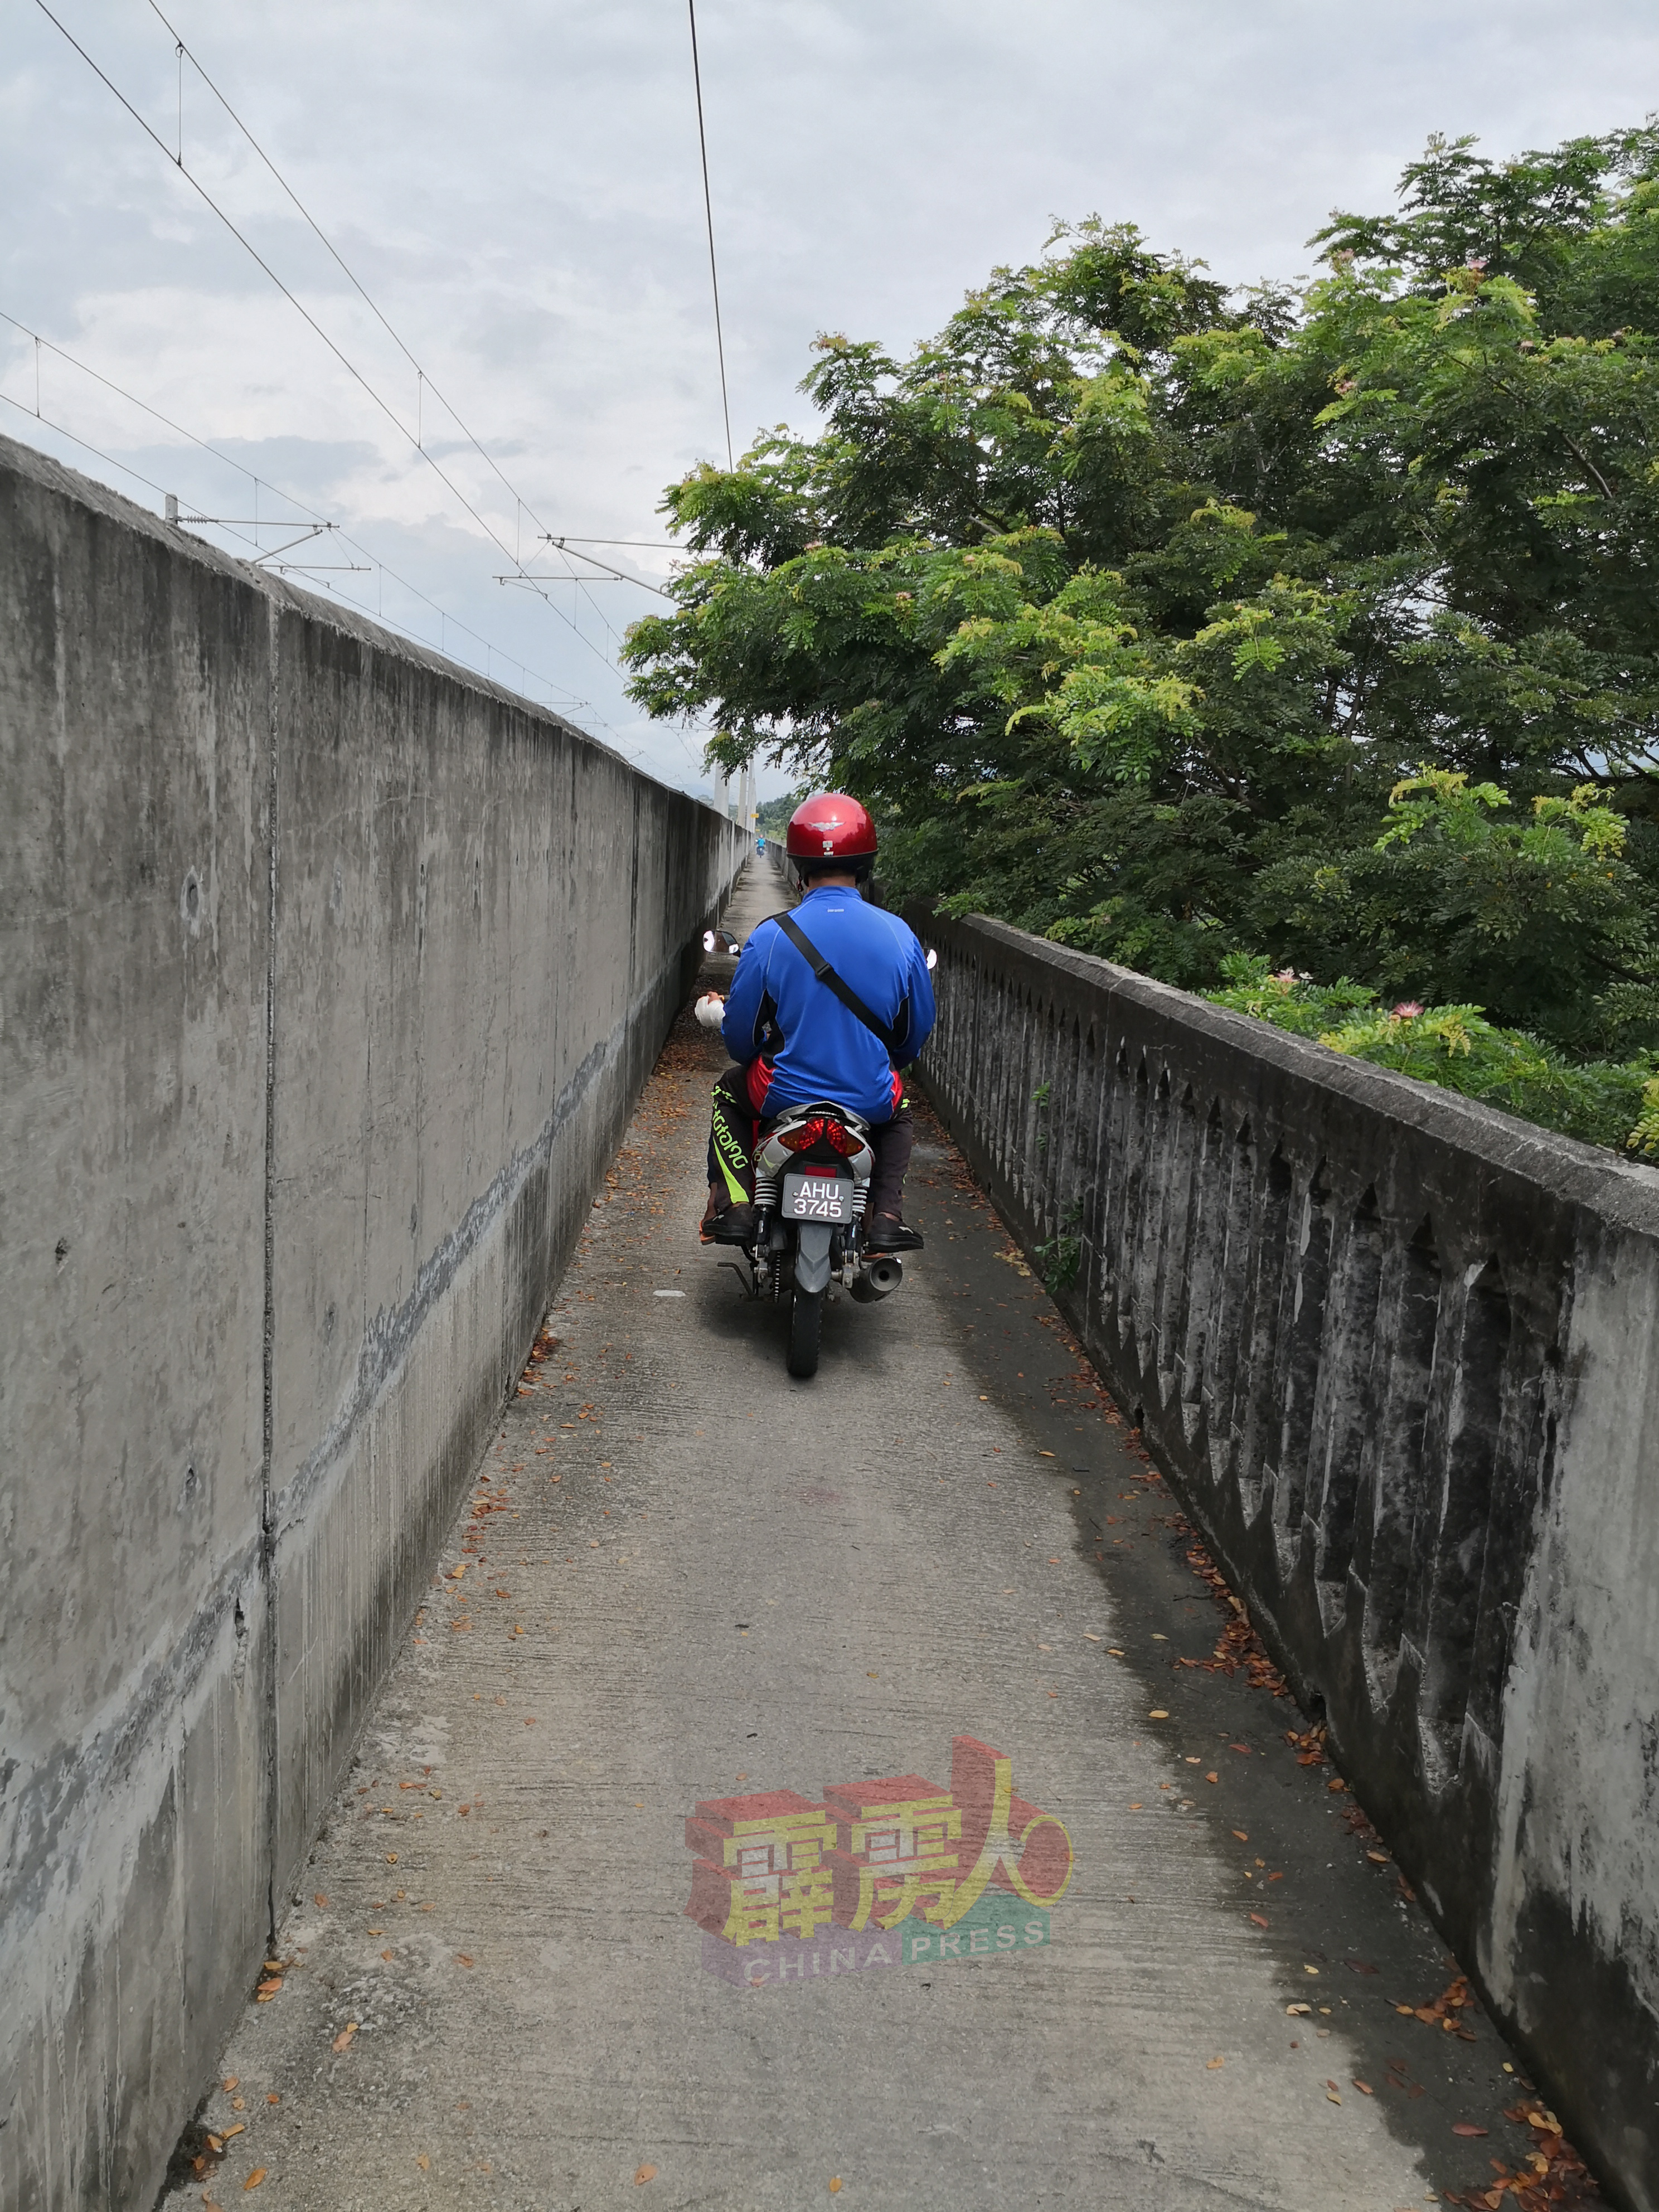 当地村民嫌弃混凝土摩哆专用道不平坦，更喜欢使用铁板小桥道骑摩哆川行两岸。